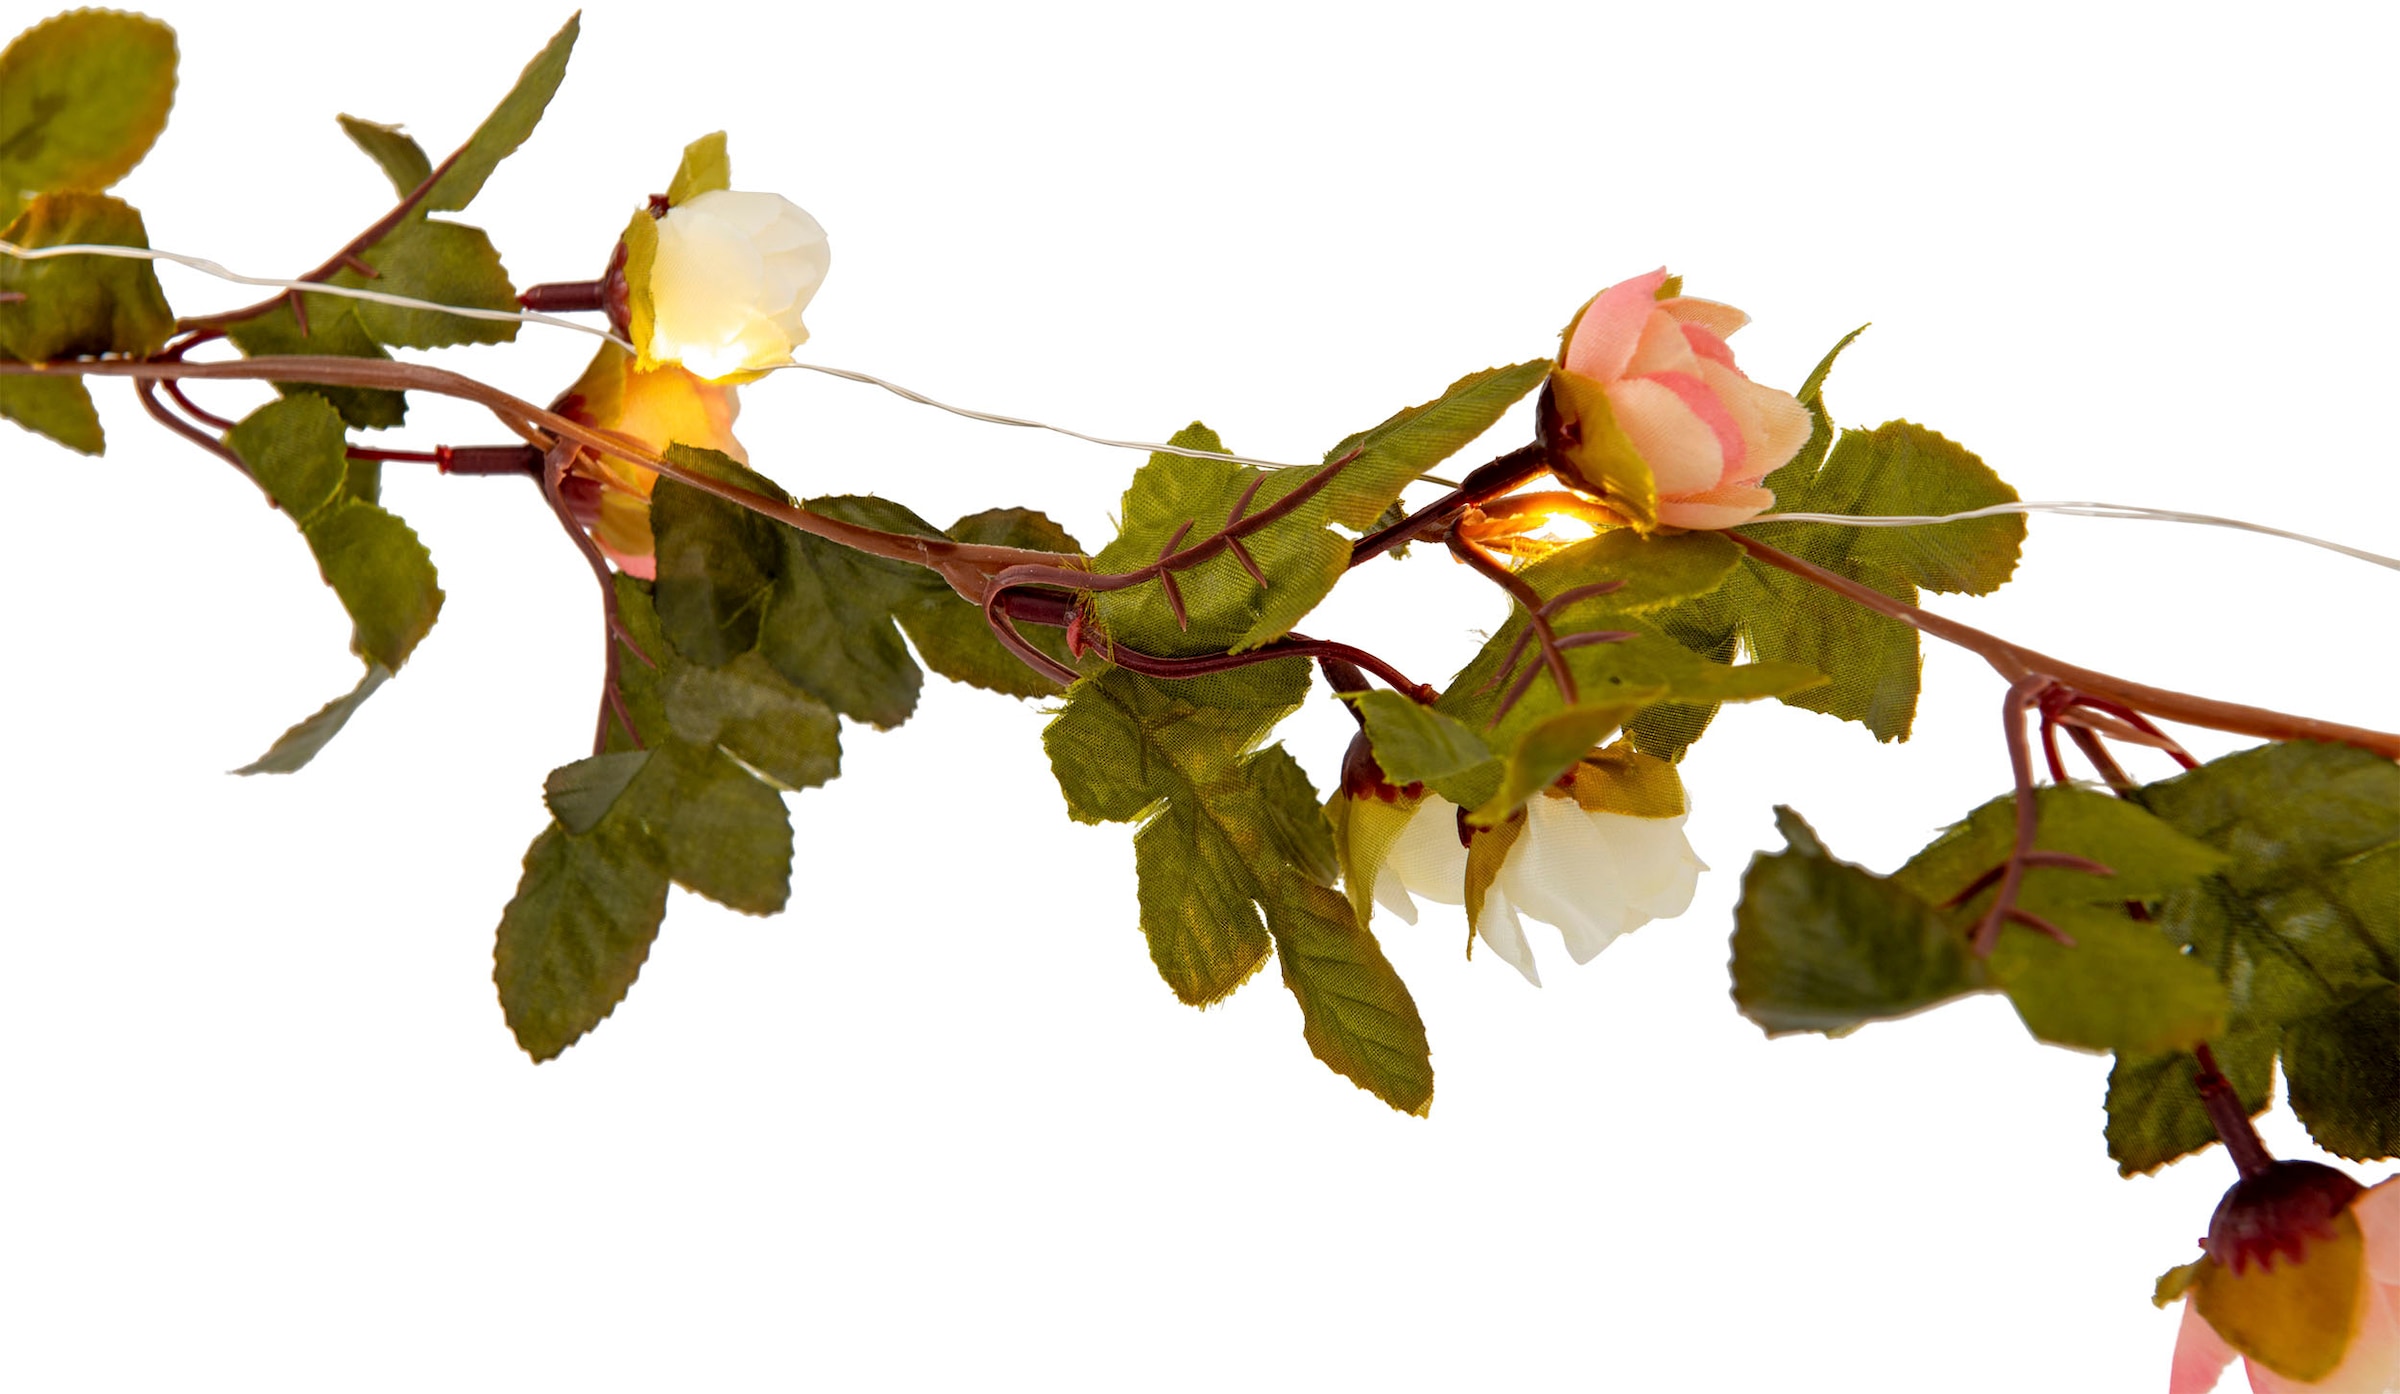 näve LED-Lichterkette »Röschen«, weiße und rosa Rosenblüten, warmweiße LED, Länge 420cm, Zuleitung 5m